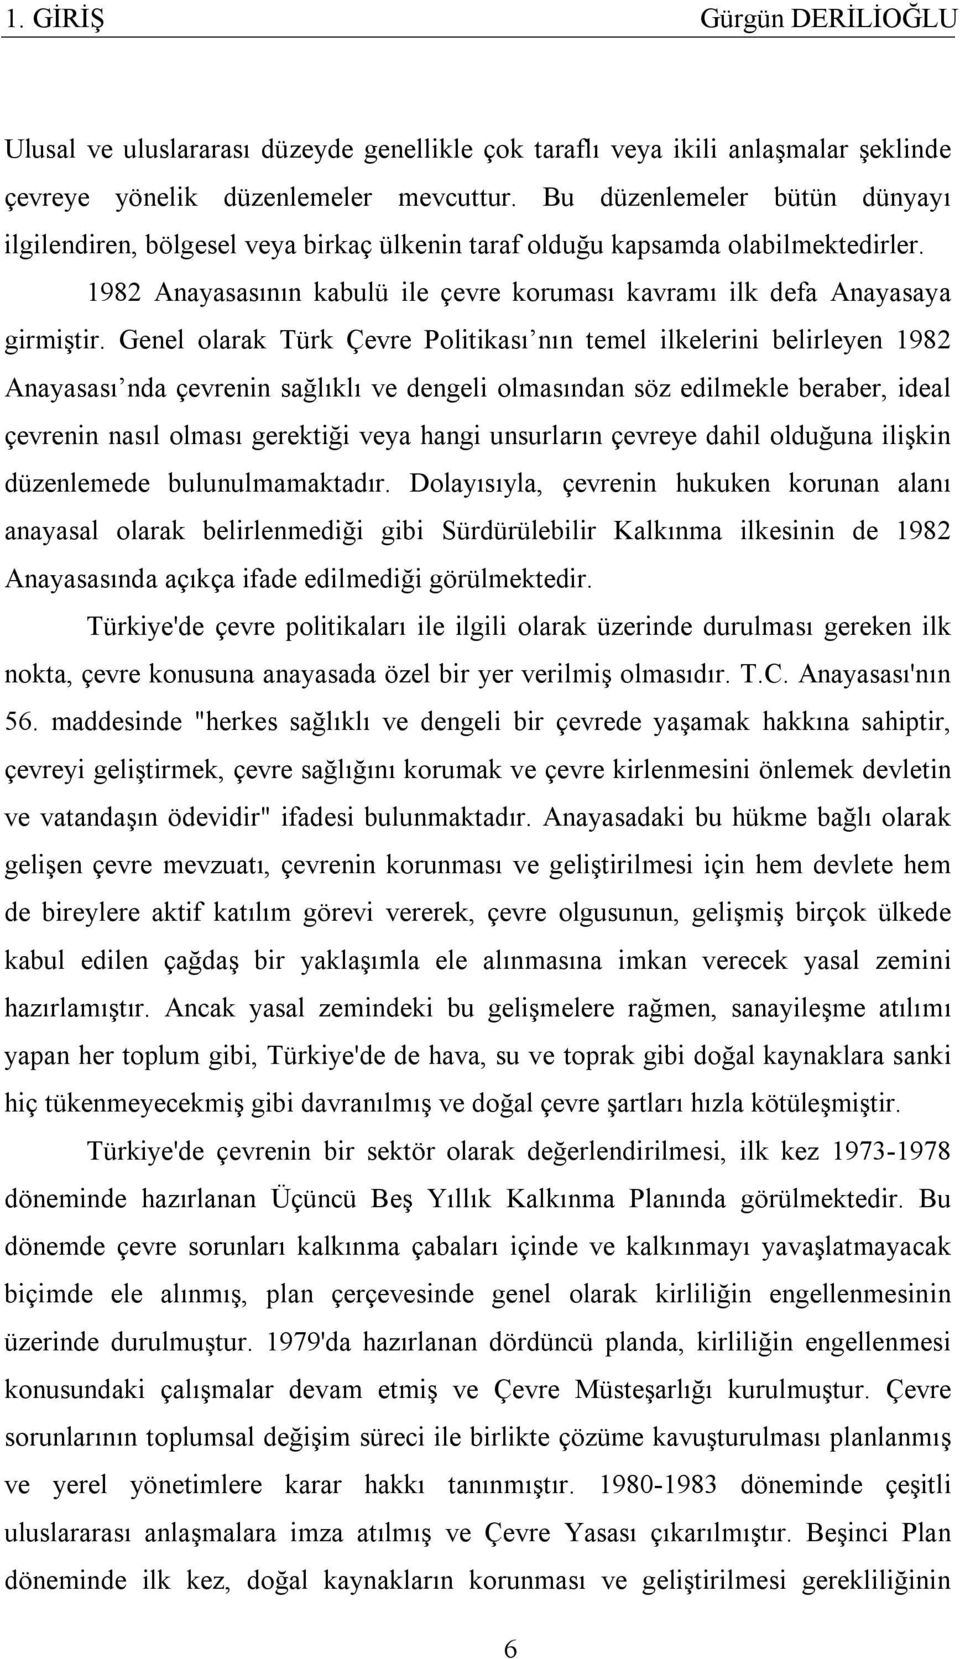 Genel olarak Türk Çevre Politikası nın temel ilkelerini belirleyen 1982 Anayasası nda çevrenin sağlıklı ve dengeli olmasından söz edilmekle beraber, ideal çevrenin nasıl olması gerektiği veya hangi